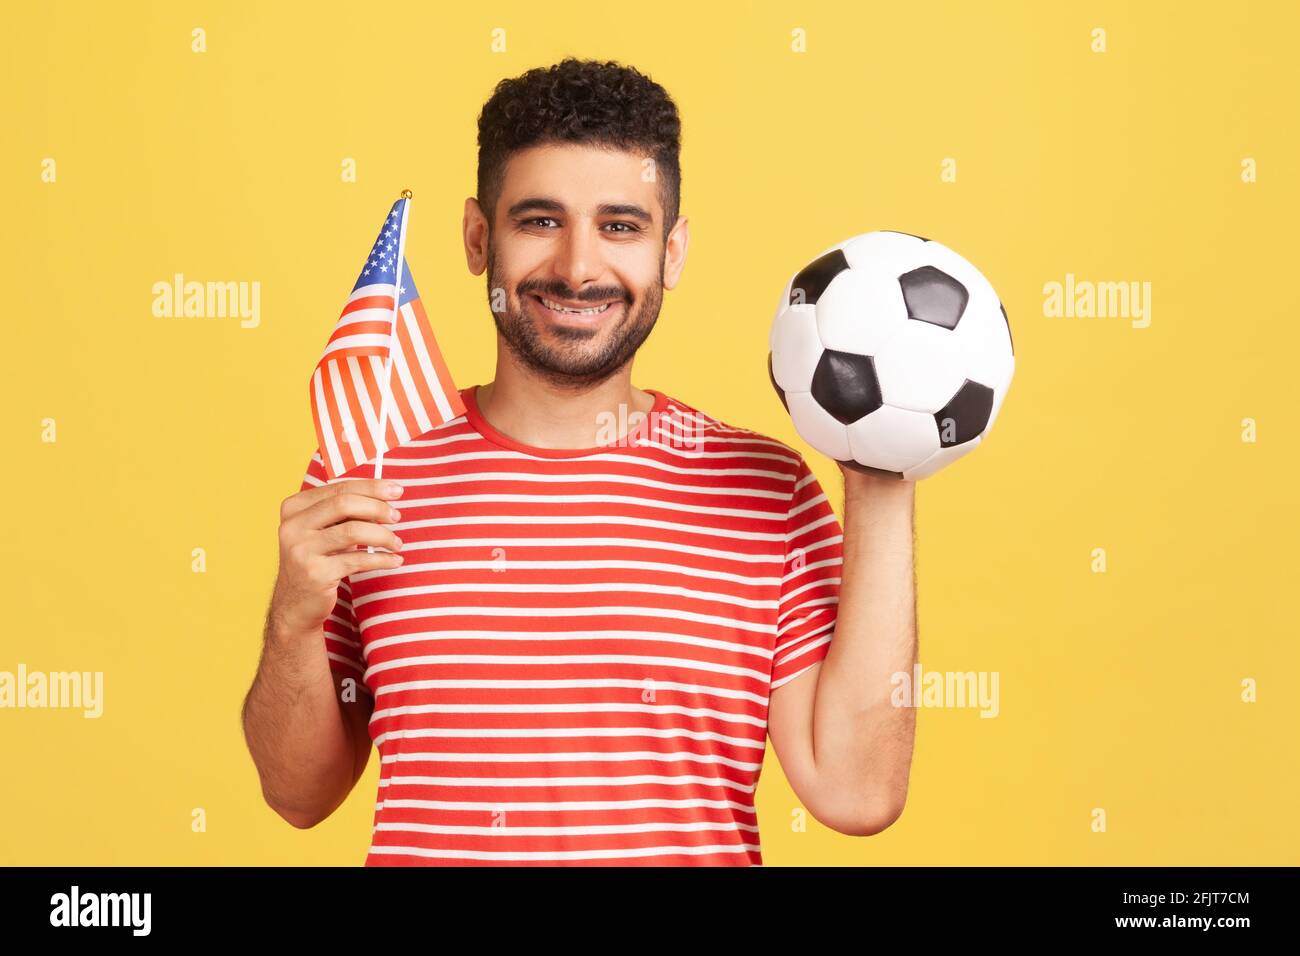 Lächelnder, positiver Mann mit Bart im gestreiften T-Shirt mit der Flagge  der vereinigten Staaten von amerika und der schwarzen und weißen Fußball-Kugel,  united Soccer League. Ind Stockfotografie - Alamy